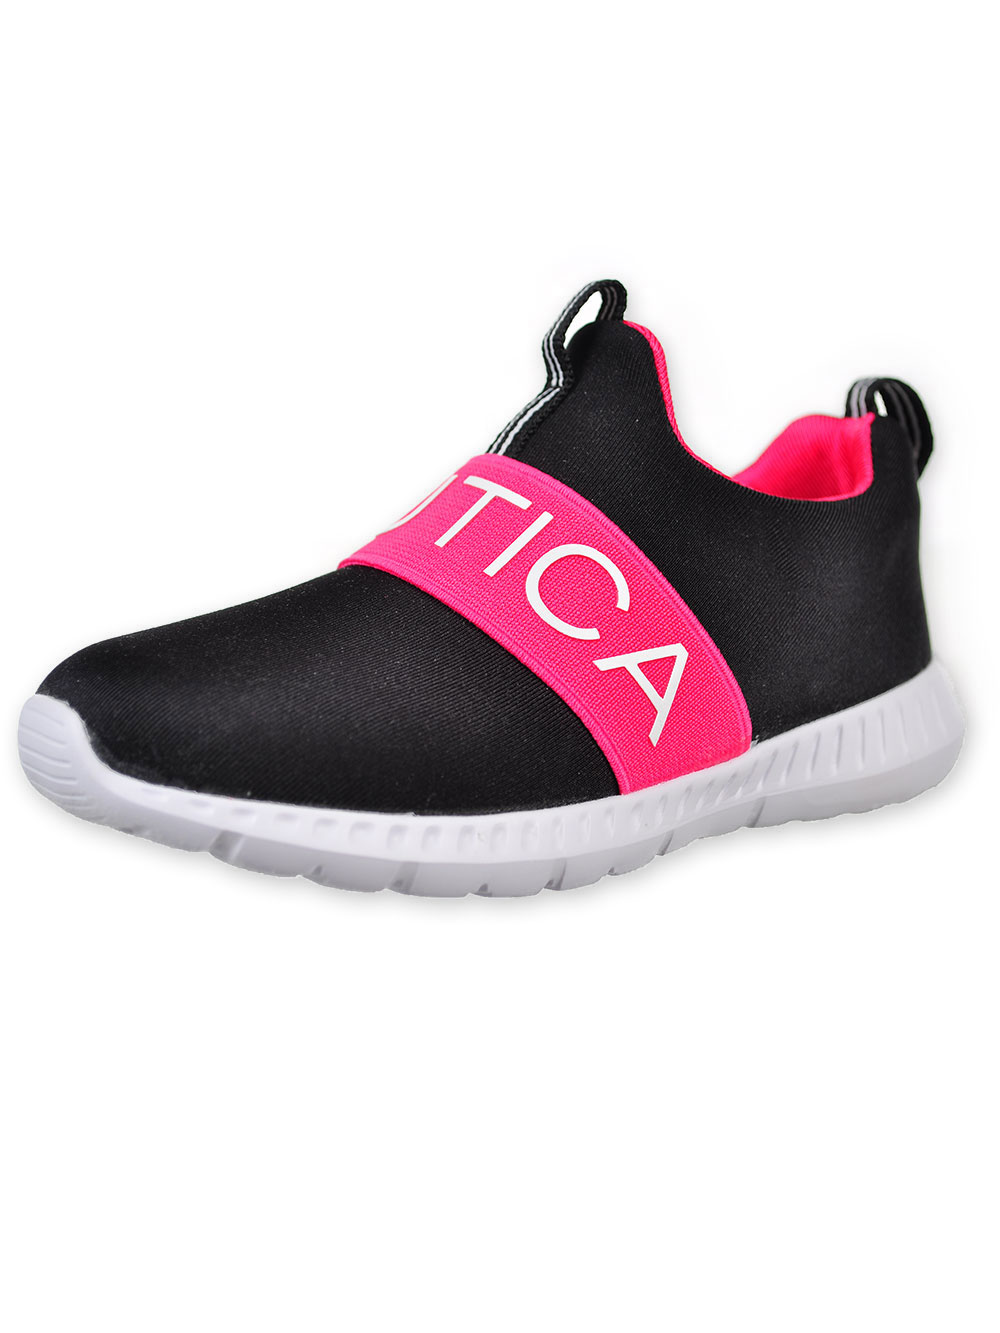 Black/pink Sneakers